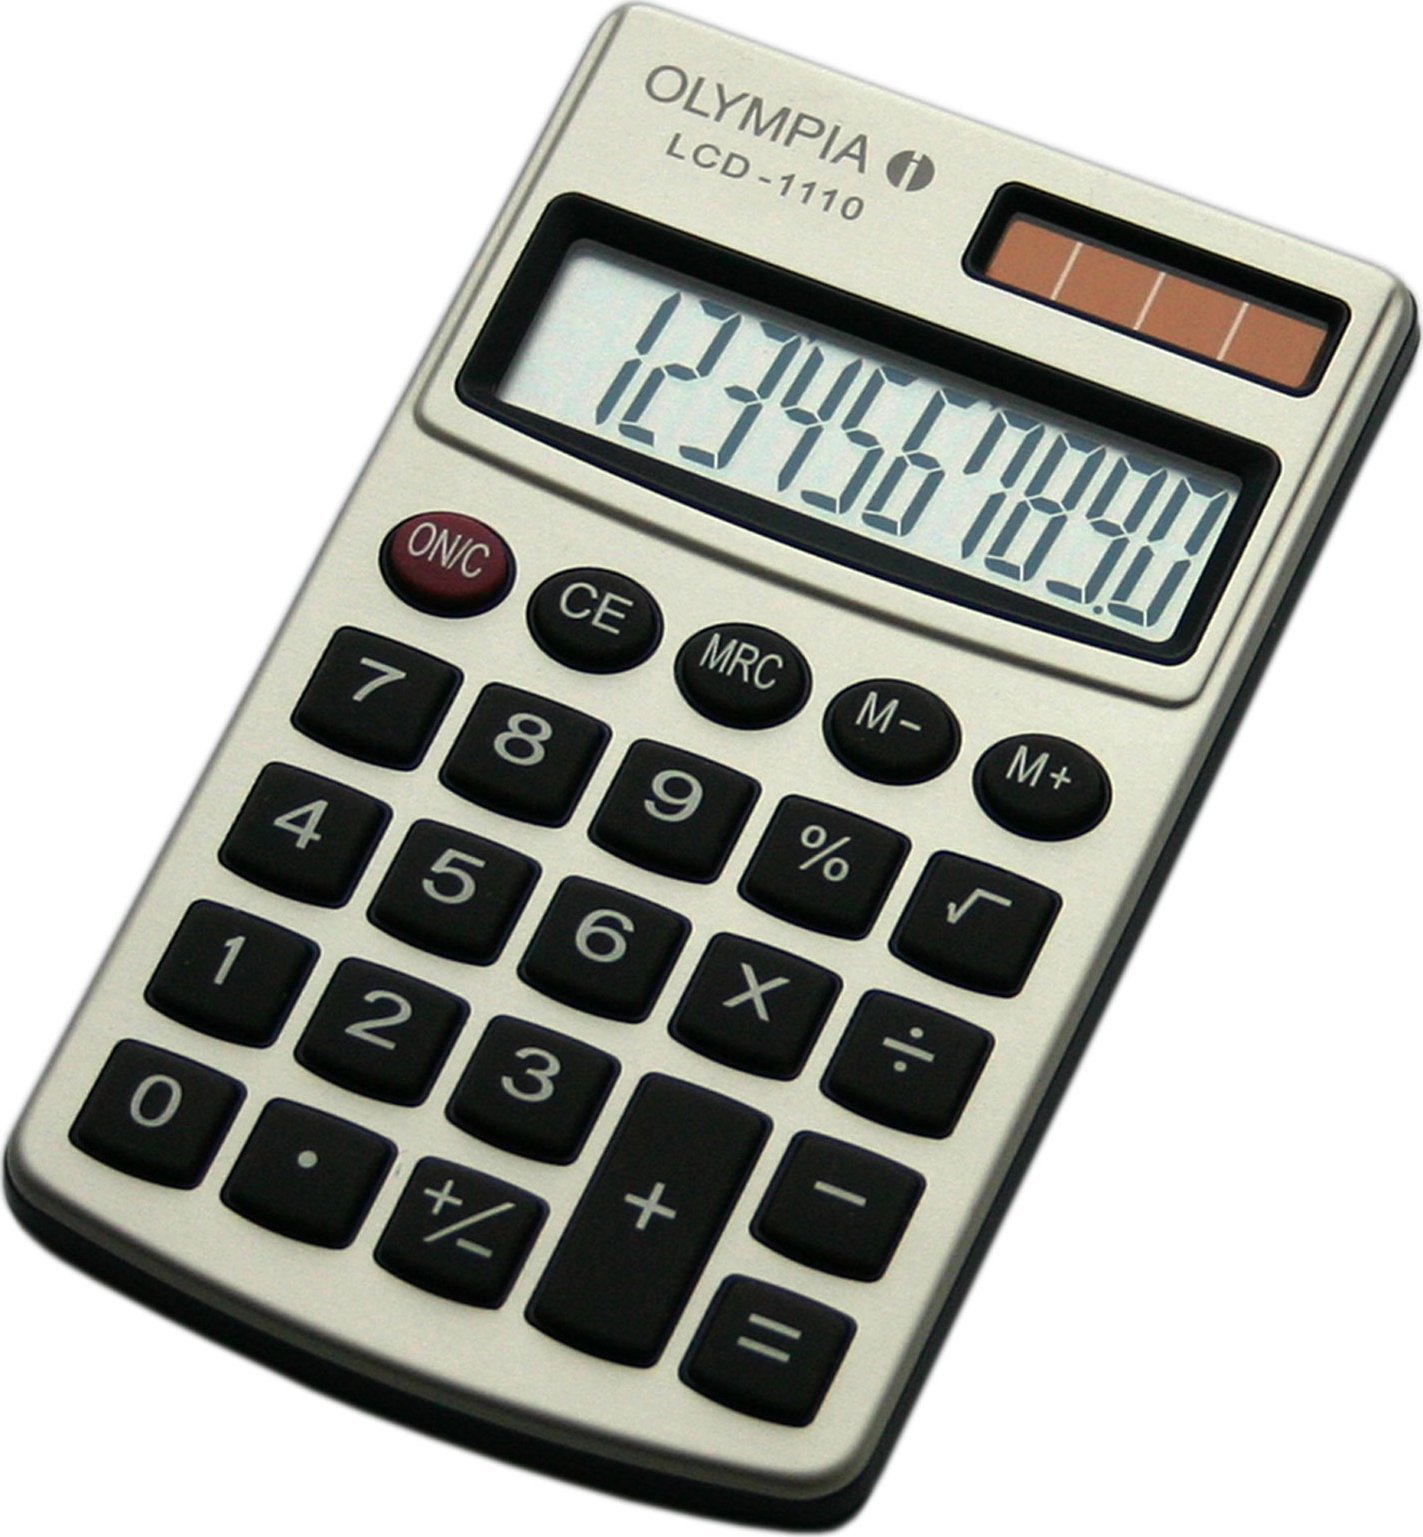 Calculator Olympia Olympia Taschenrechner LCD-1110 argintiu